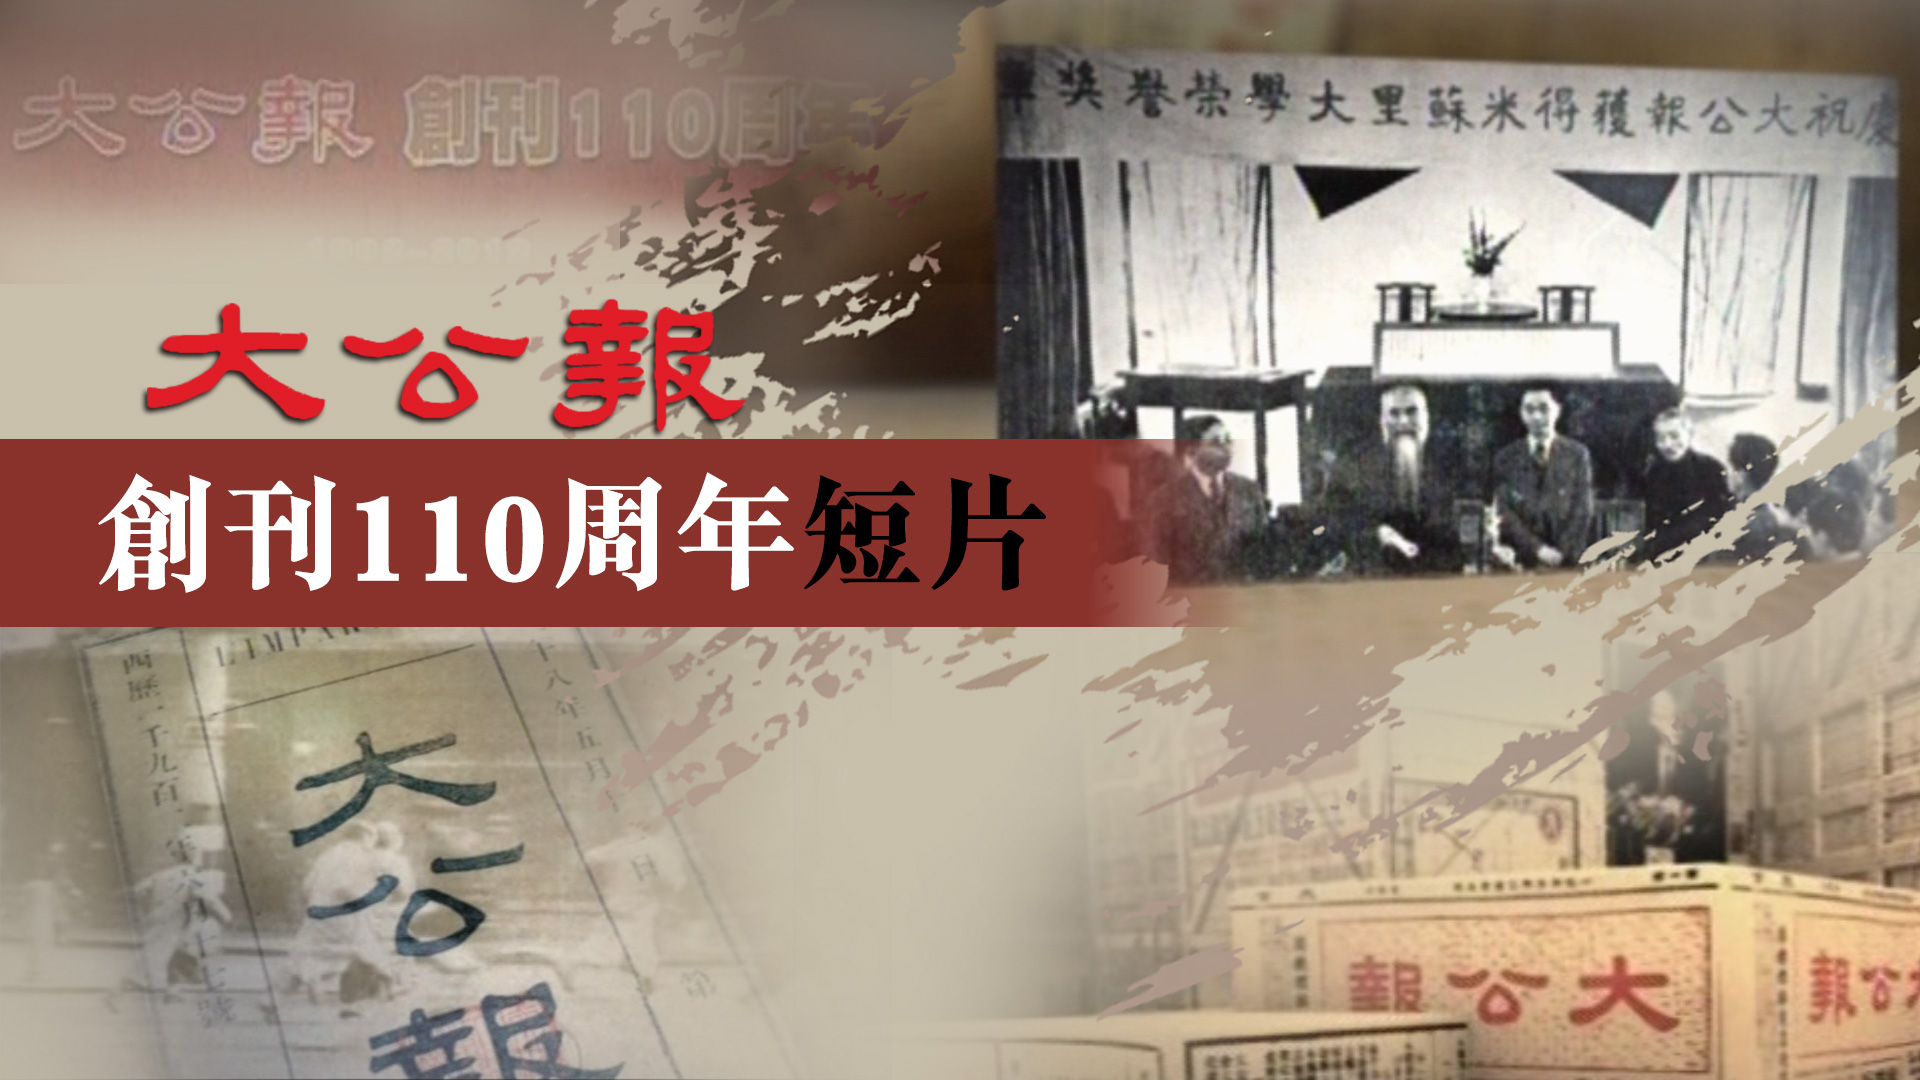 大公報創刊110周年短片